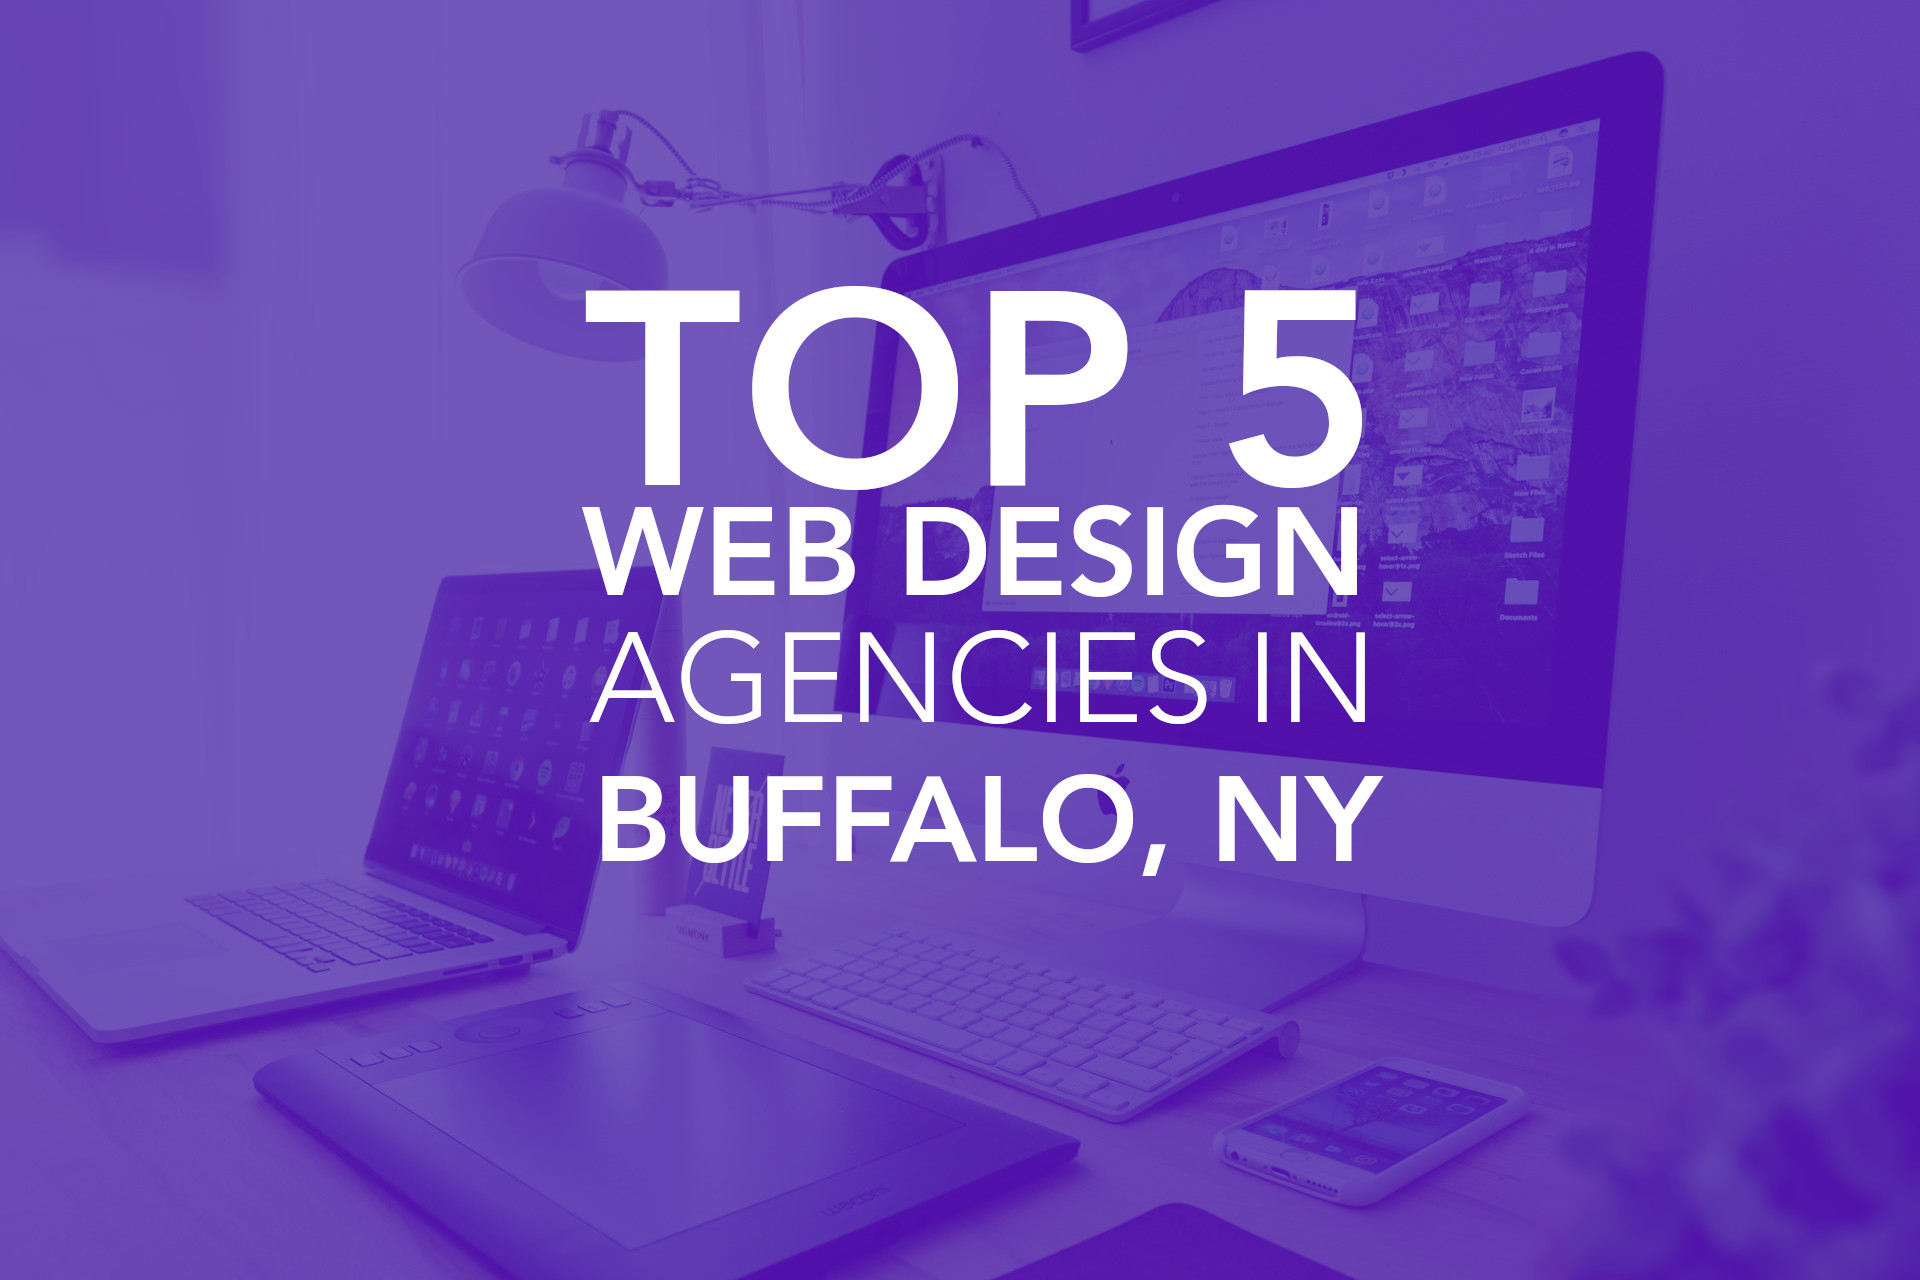 Top 5 Web Design Agencies in Buffalo, NY